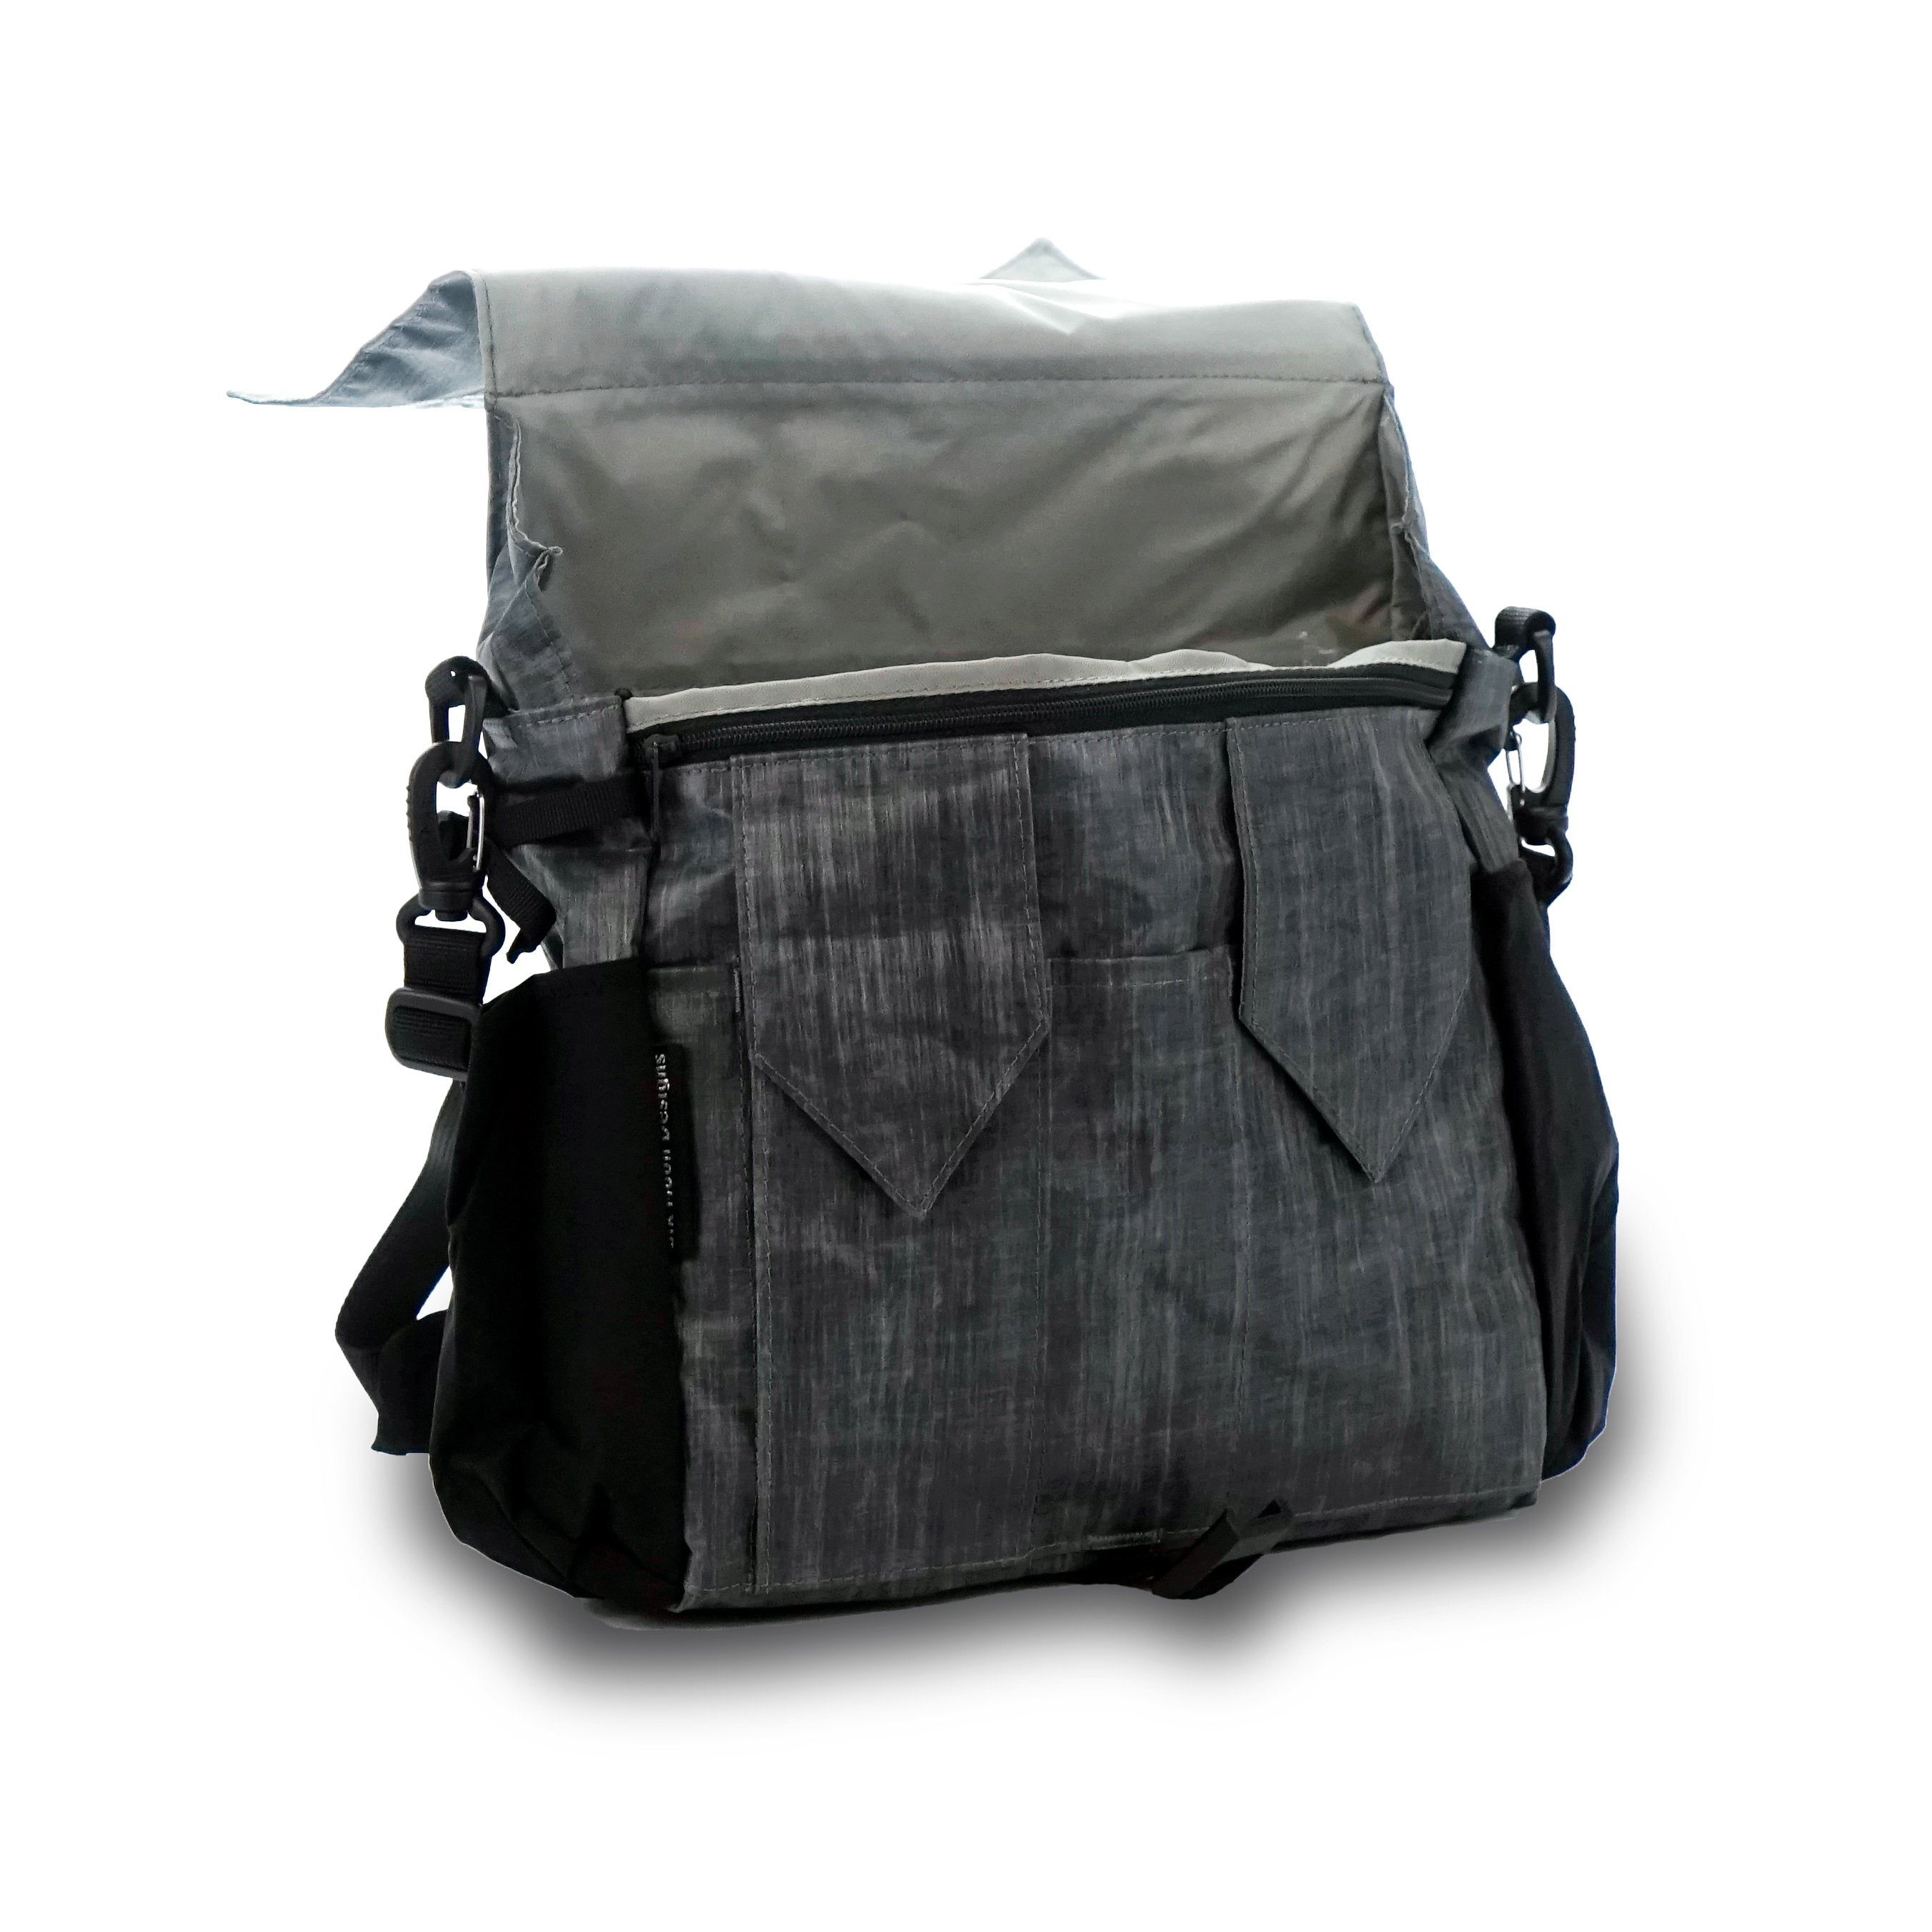 ePouch Zero-G Ultralight Travel Bag - Six Moon Designs